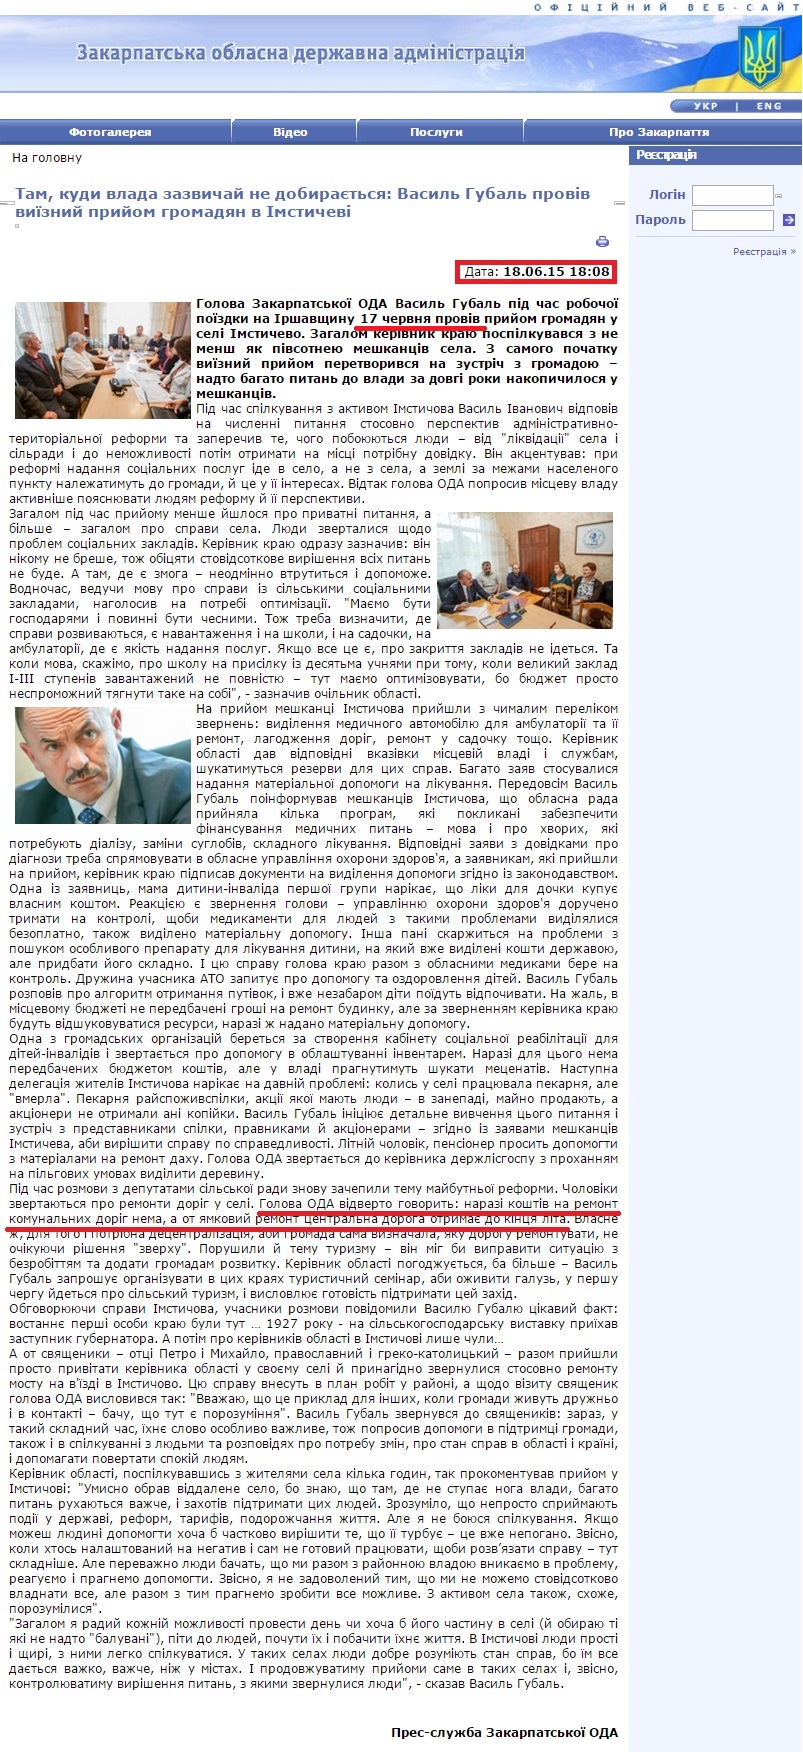 http://www.carpathia.gov.ua/ua/publication/content/11588.htm